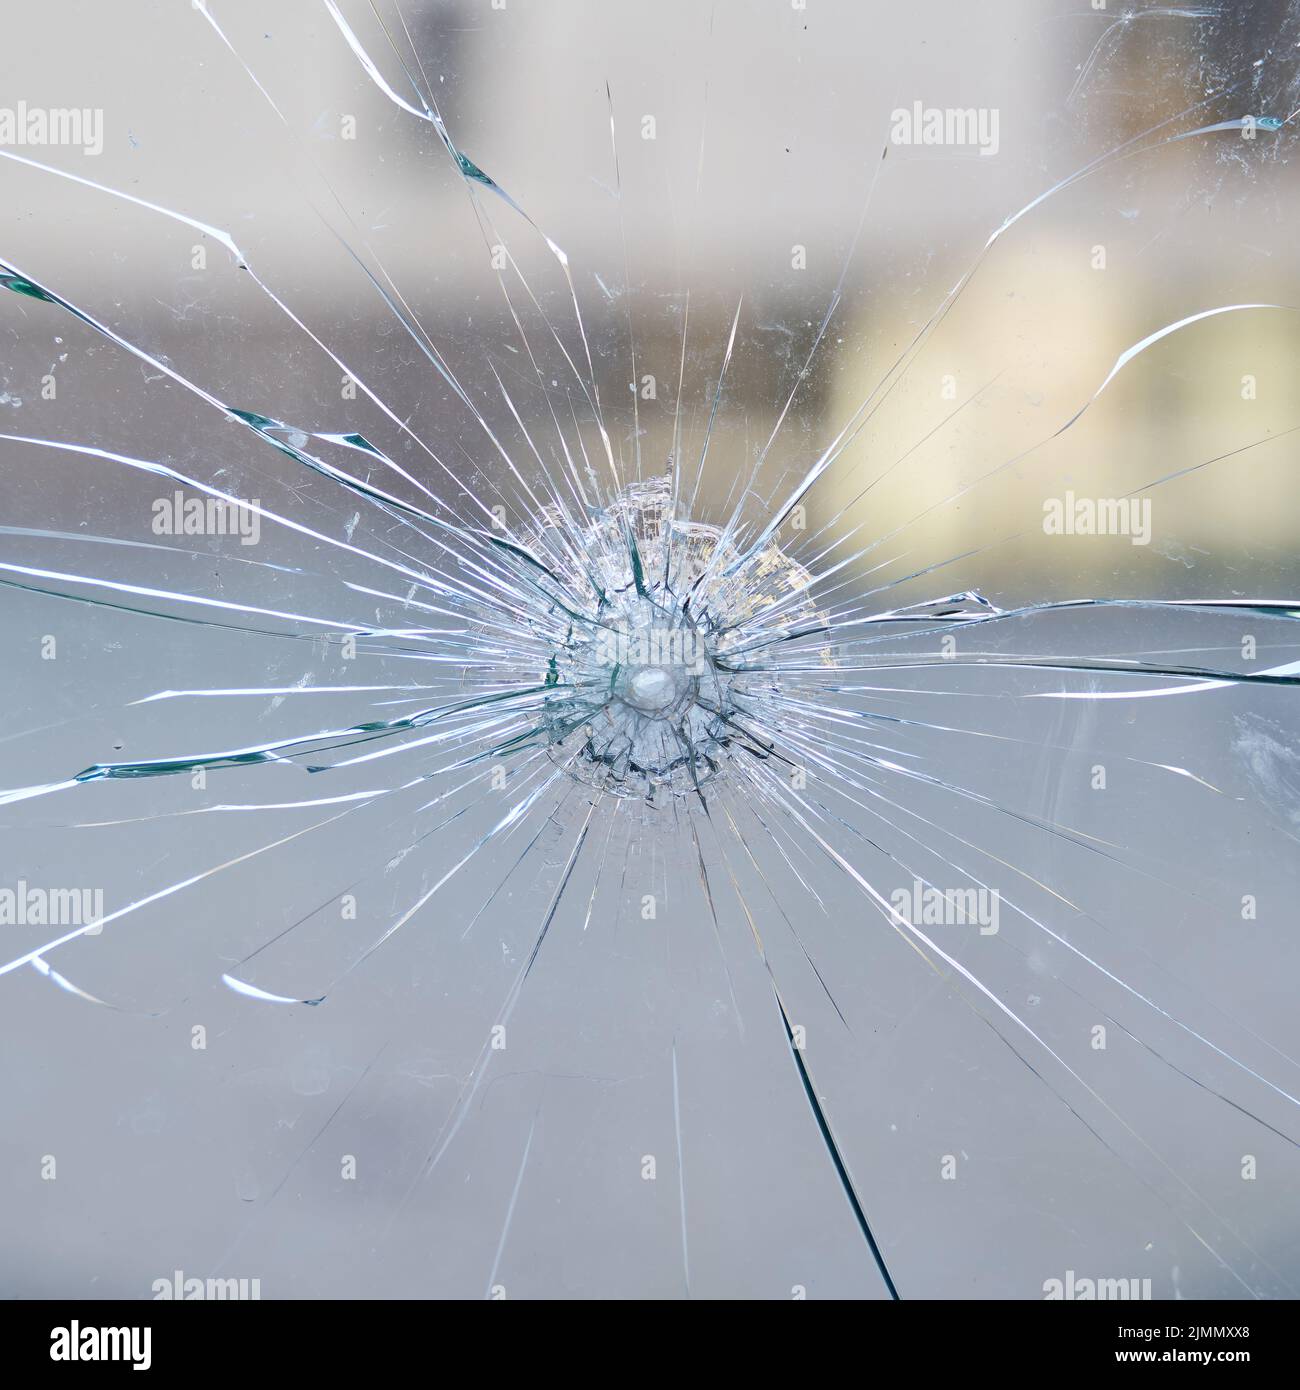 Cristal de la ventana destruido del cristal de seguridad en una tienda Foto de stock